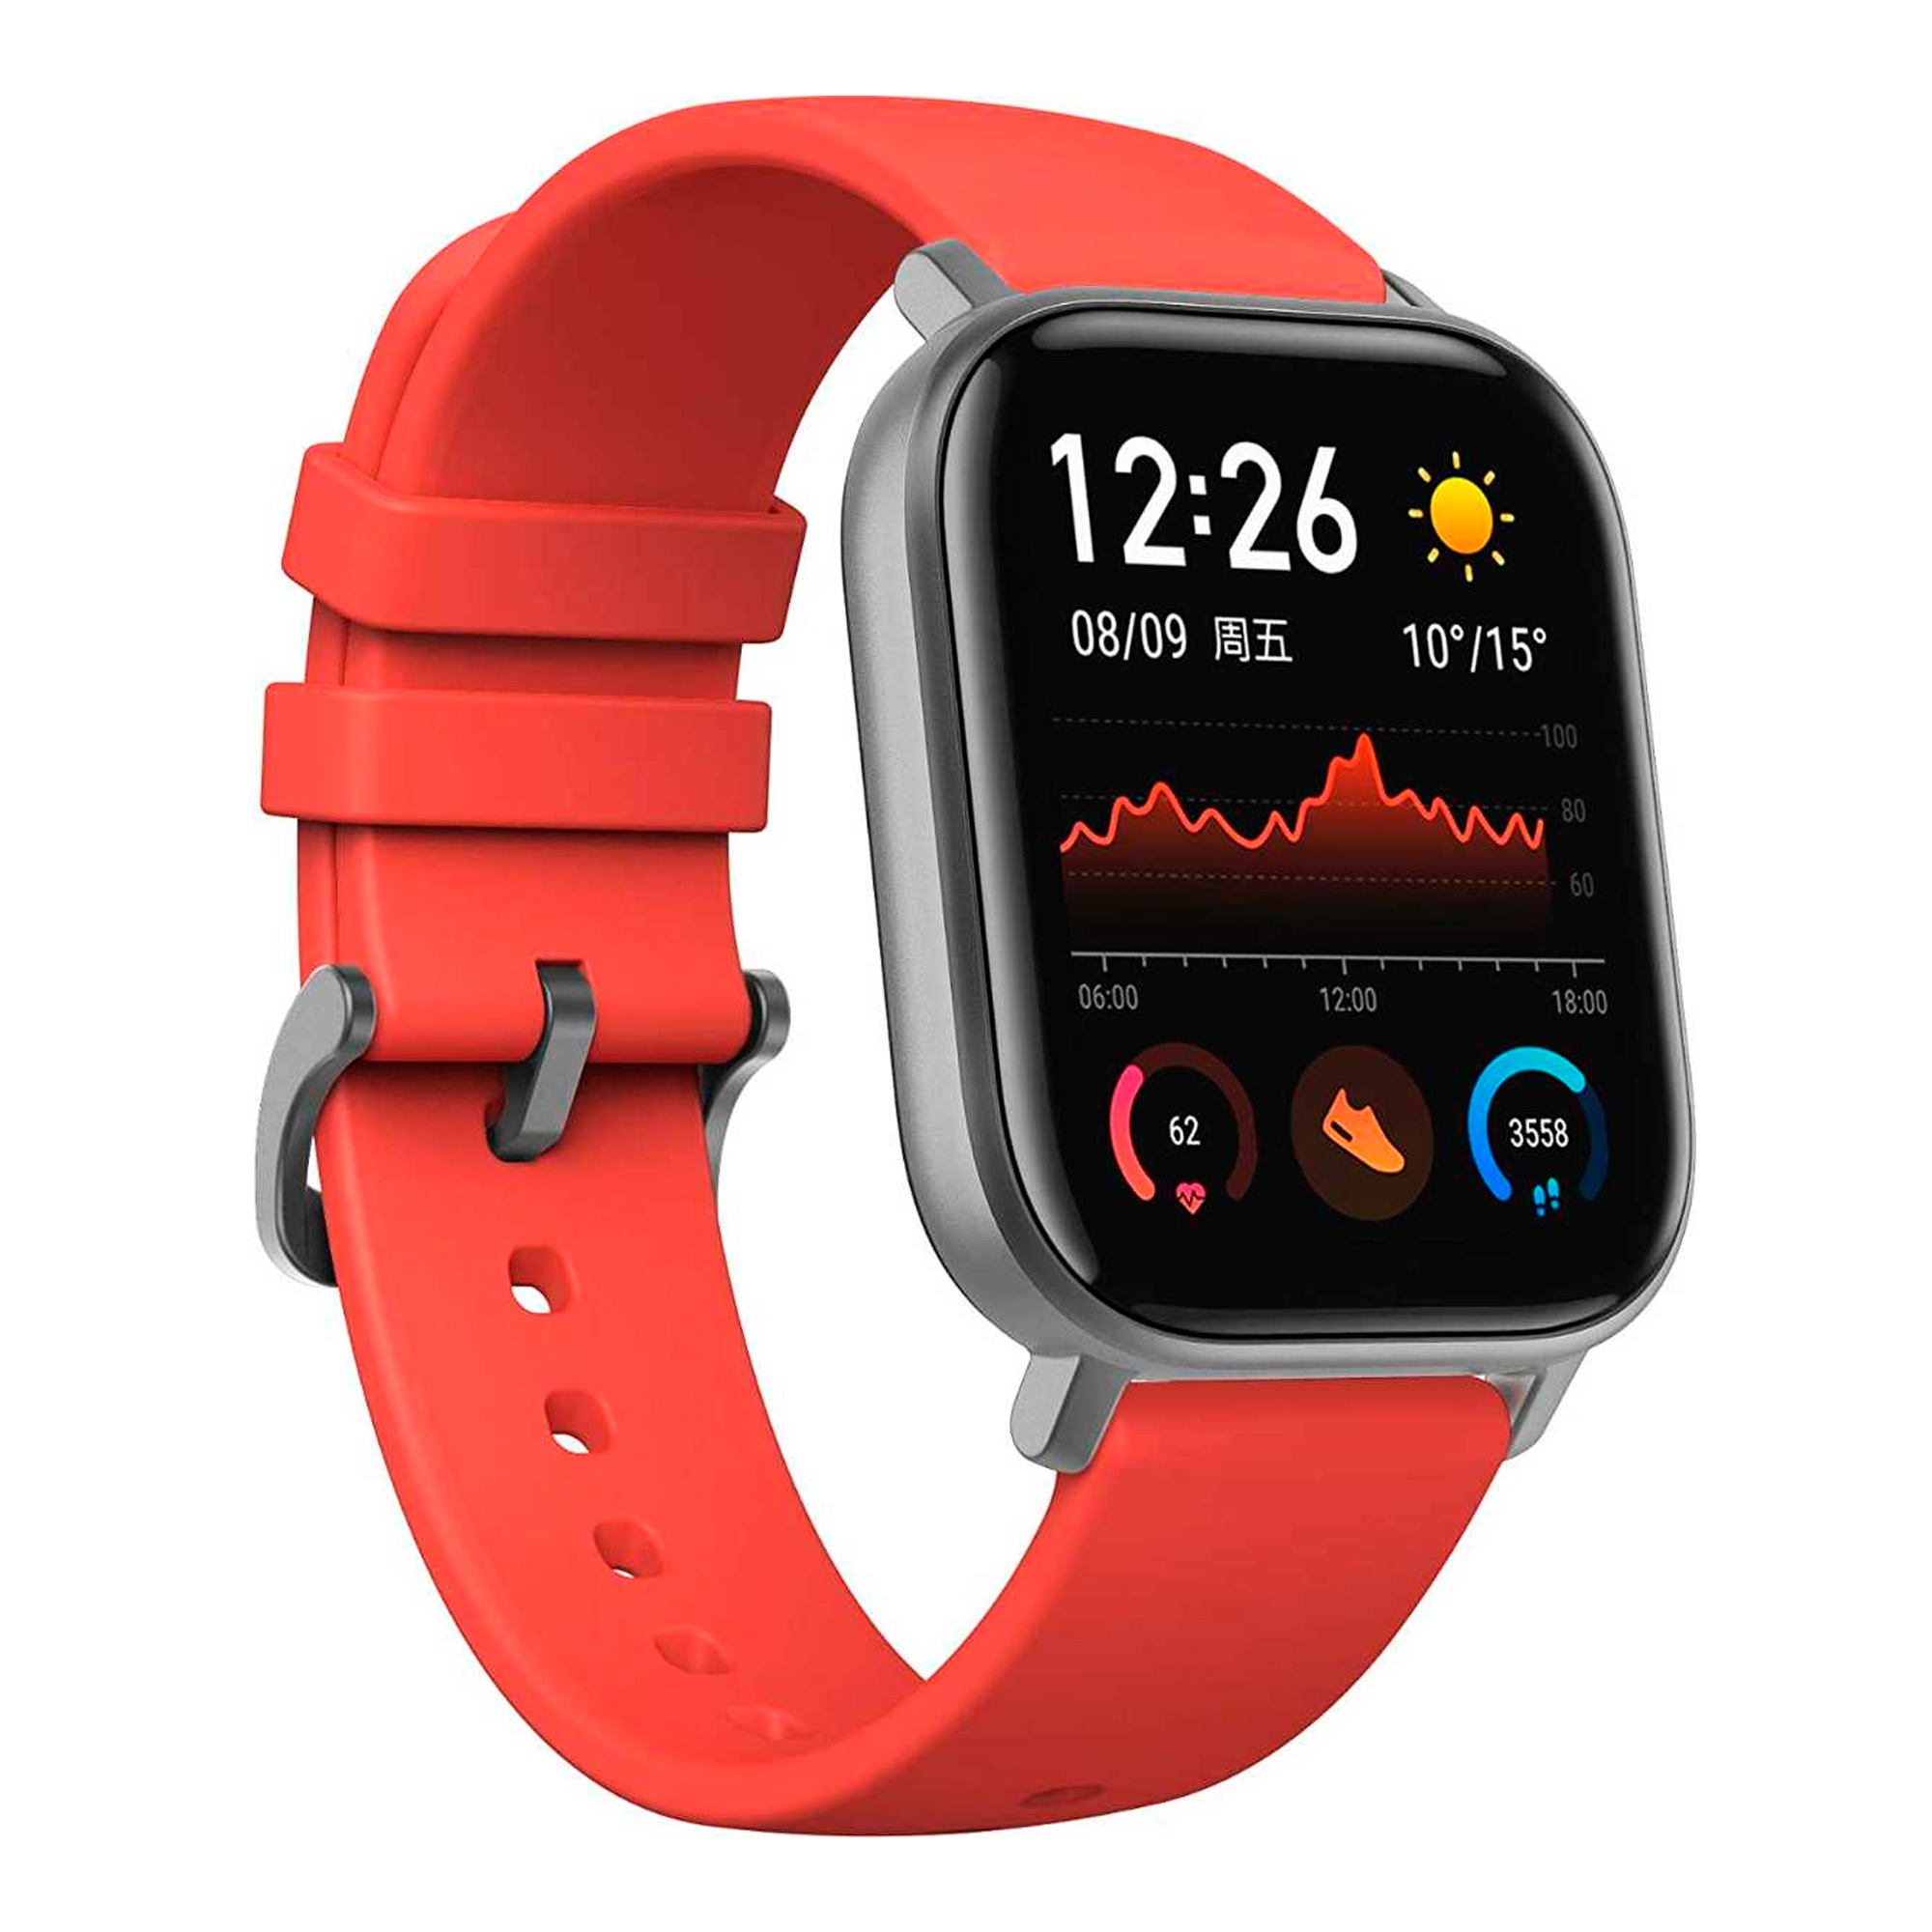 Reloj Xiaomi Smartwatch Amazfit GTS A1914